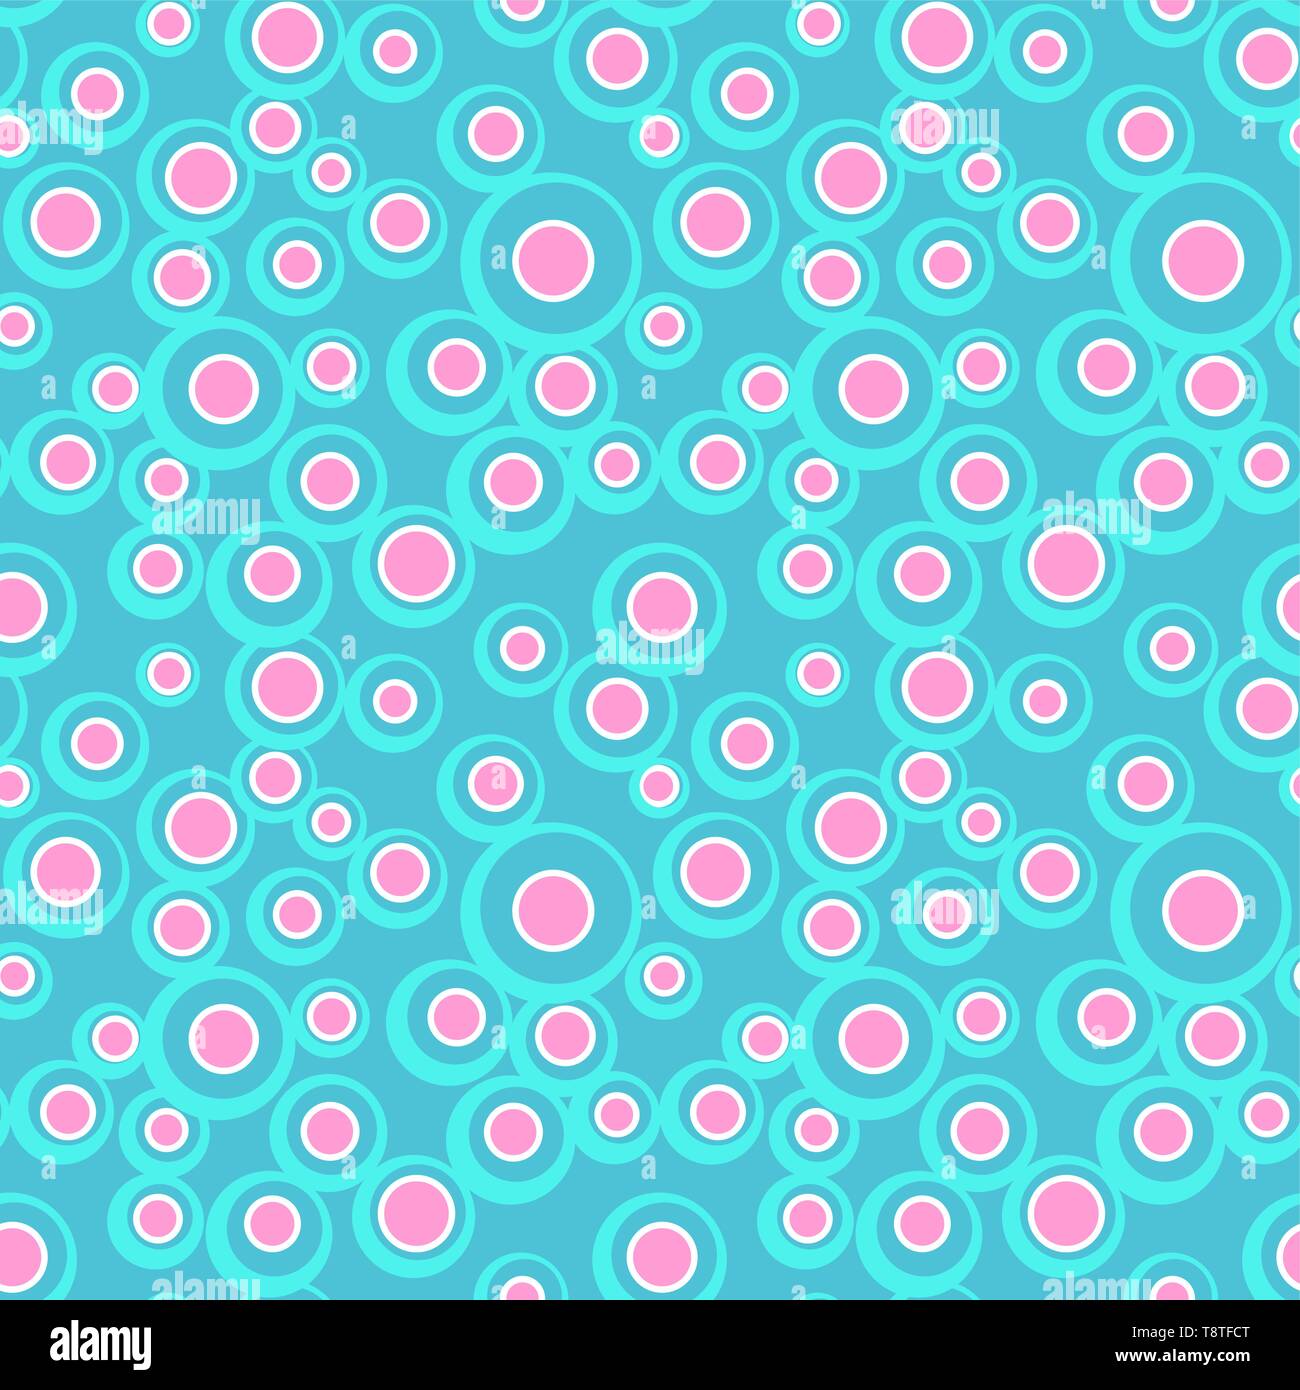 Helle Vektor bunte Blasen auf farbigen Hintergrund. Abstrakte geometrische nahtlose Muster für Textilwaren, Geschenkpapier, Drucke, Stoff, Wallpaper, Web Stock Vektor